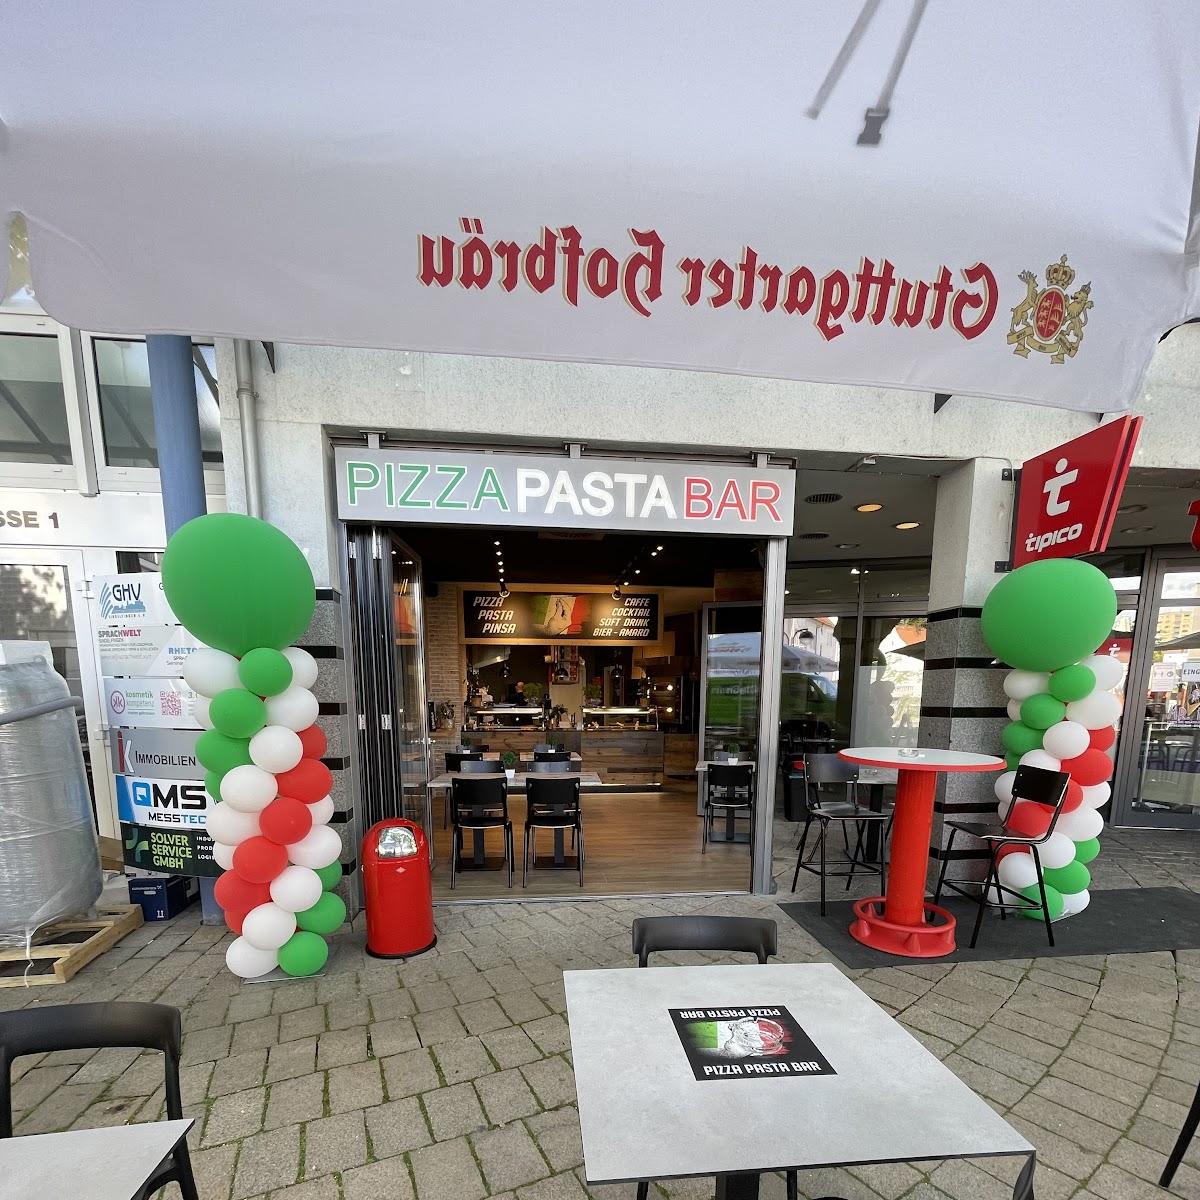 Restaurant "Pizza Pasta Bar" in Sindelfingen